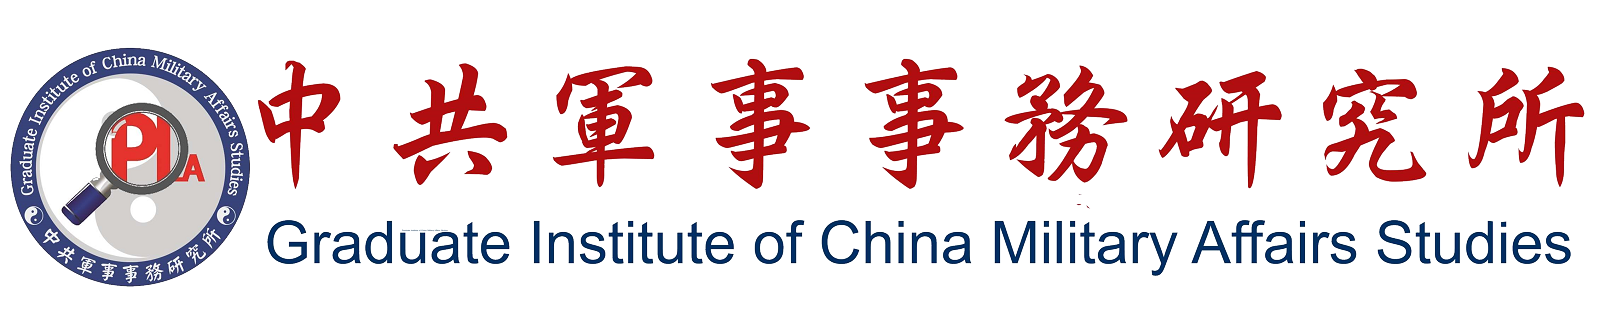 Graduate Institute of China Military Affairs Studies